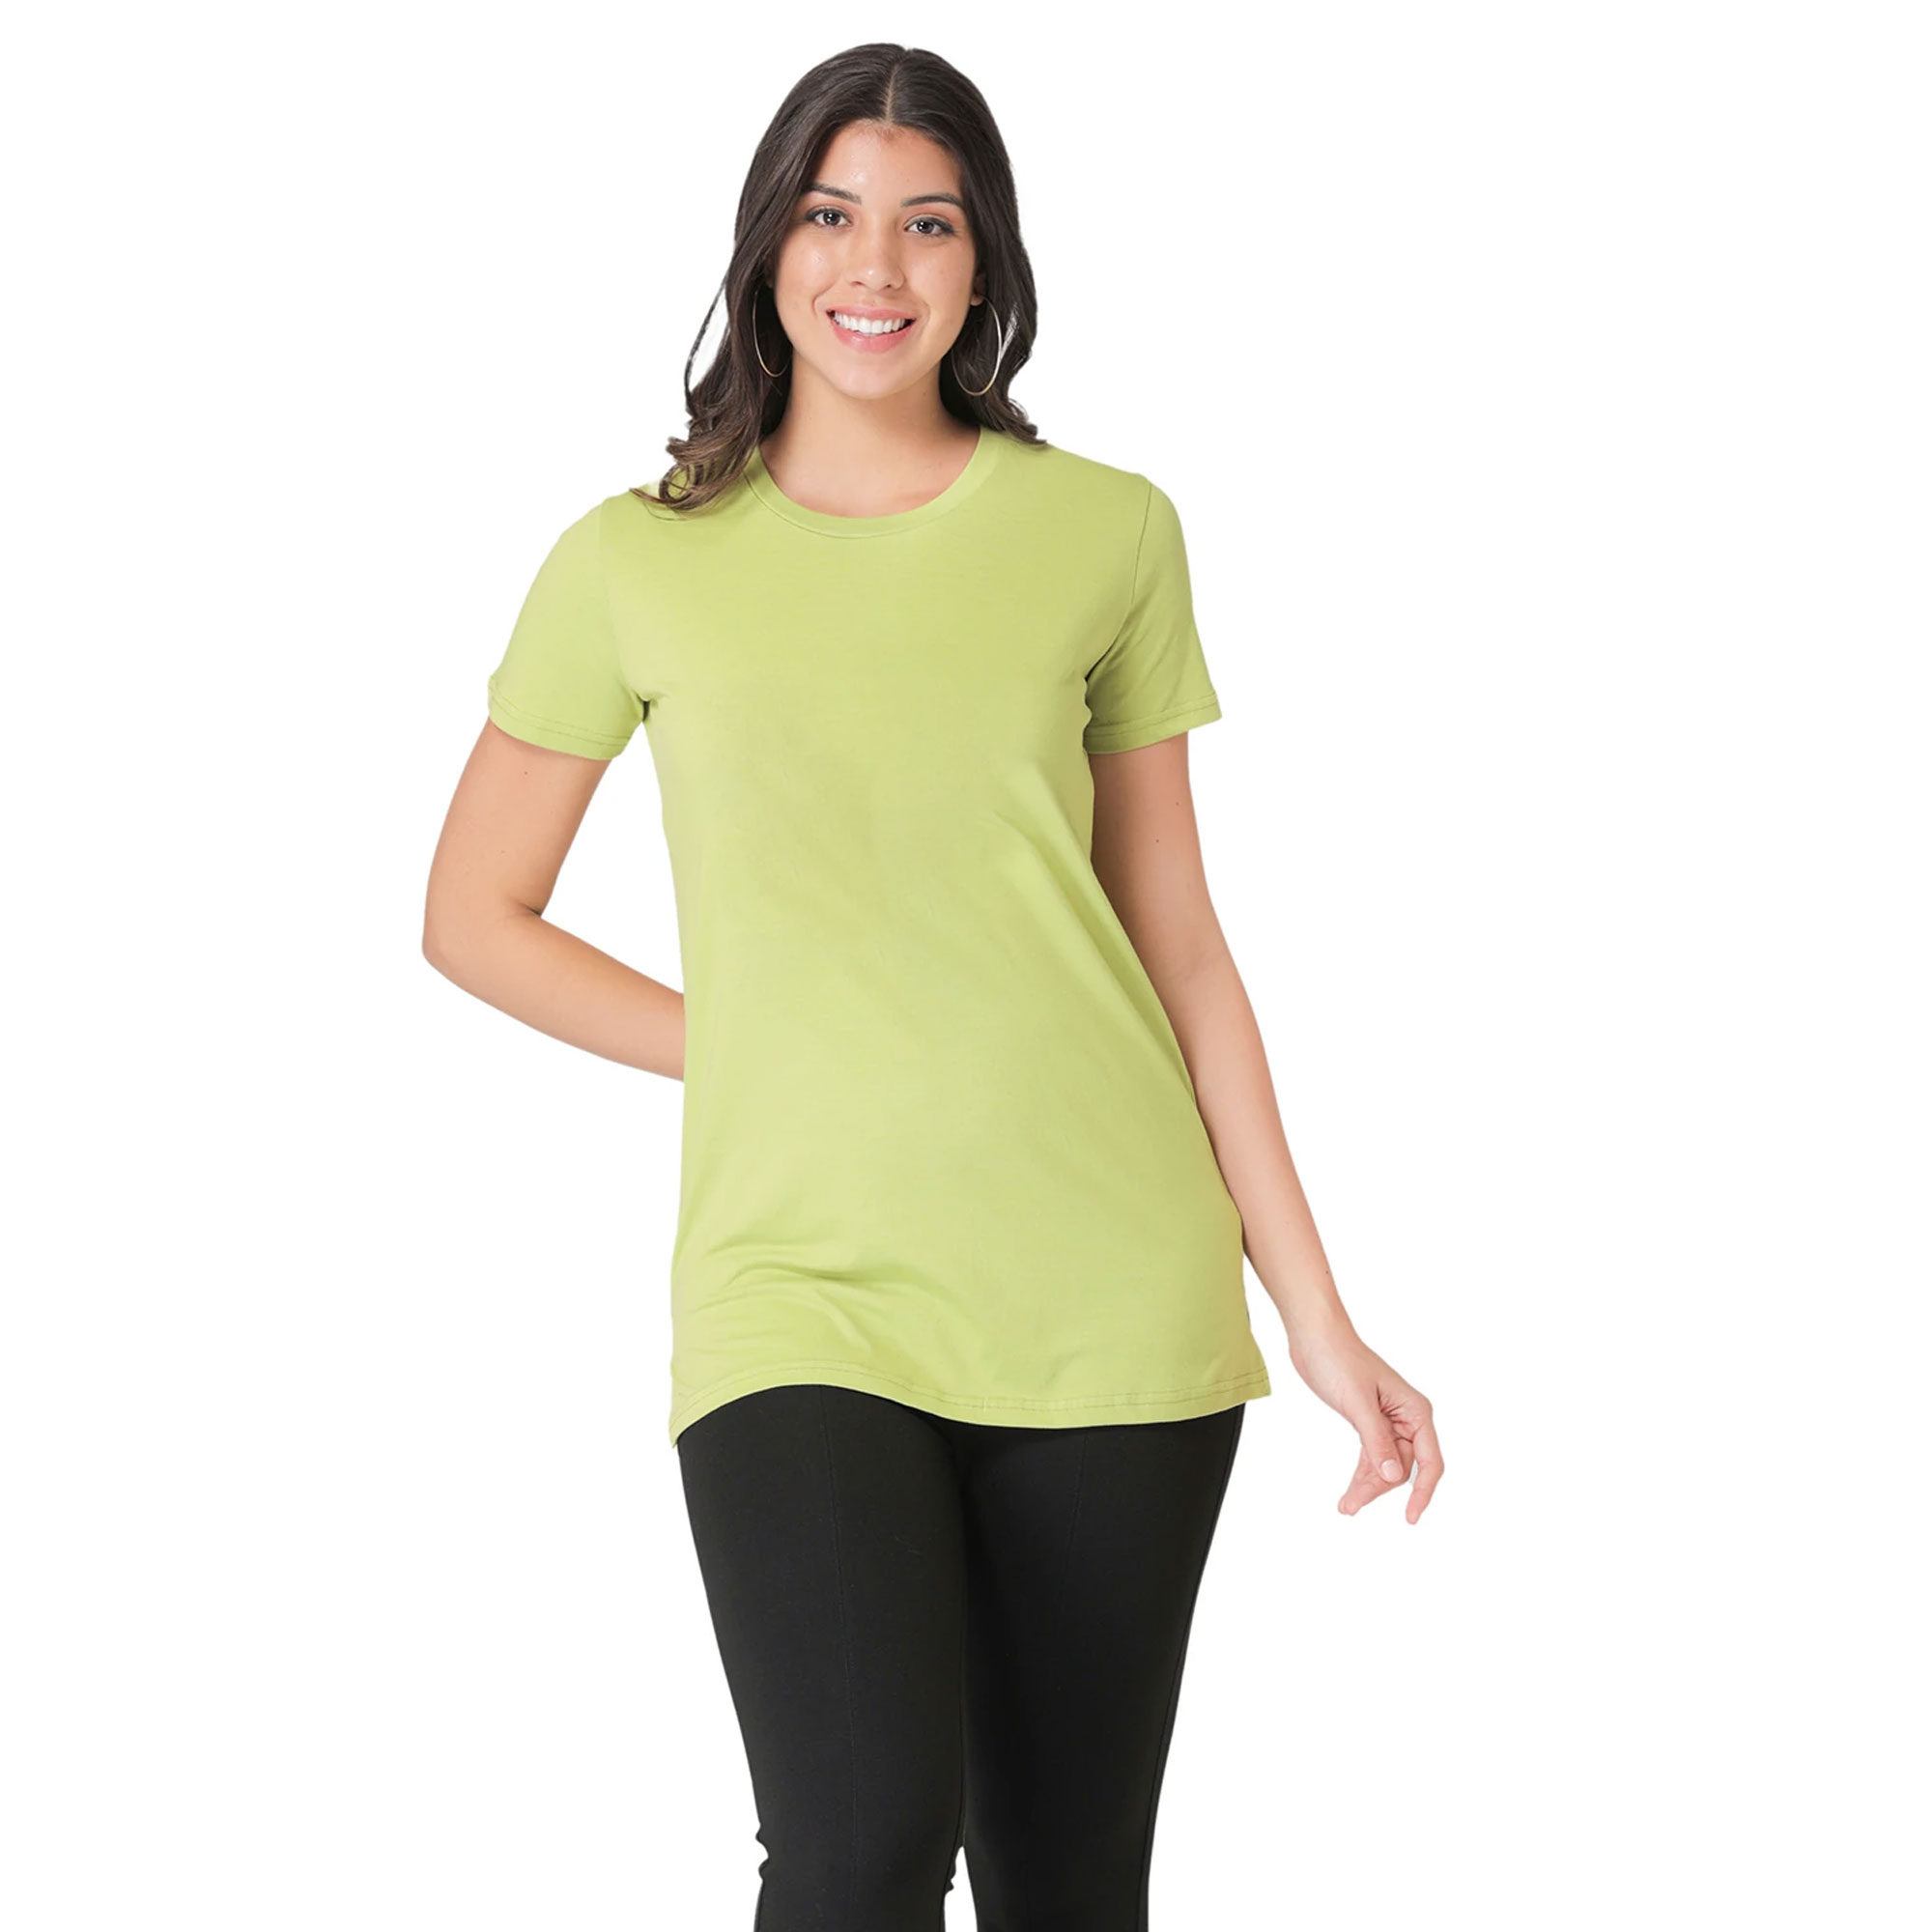 Μπλουζάκι OEM Γυναικείο Μπλουζάκι Προσαρμοσμένο με λογότυπο Μπλουζάκι Υψηλής Ποιότητας Βαμβακερό απαλό μπλουζάκι με λεπτή εφαρμογή